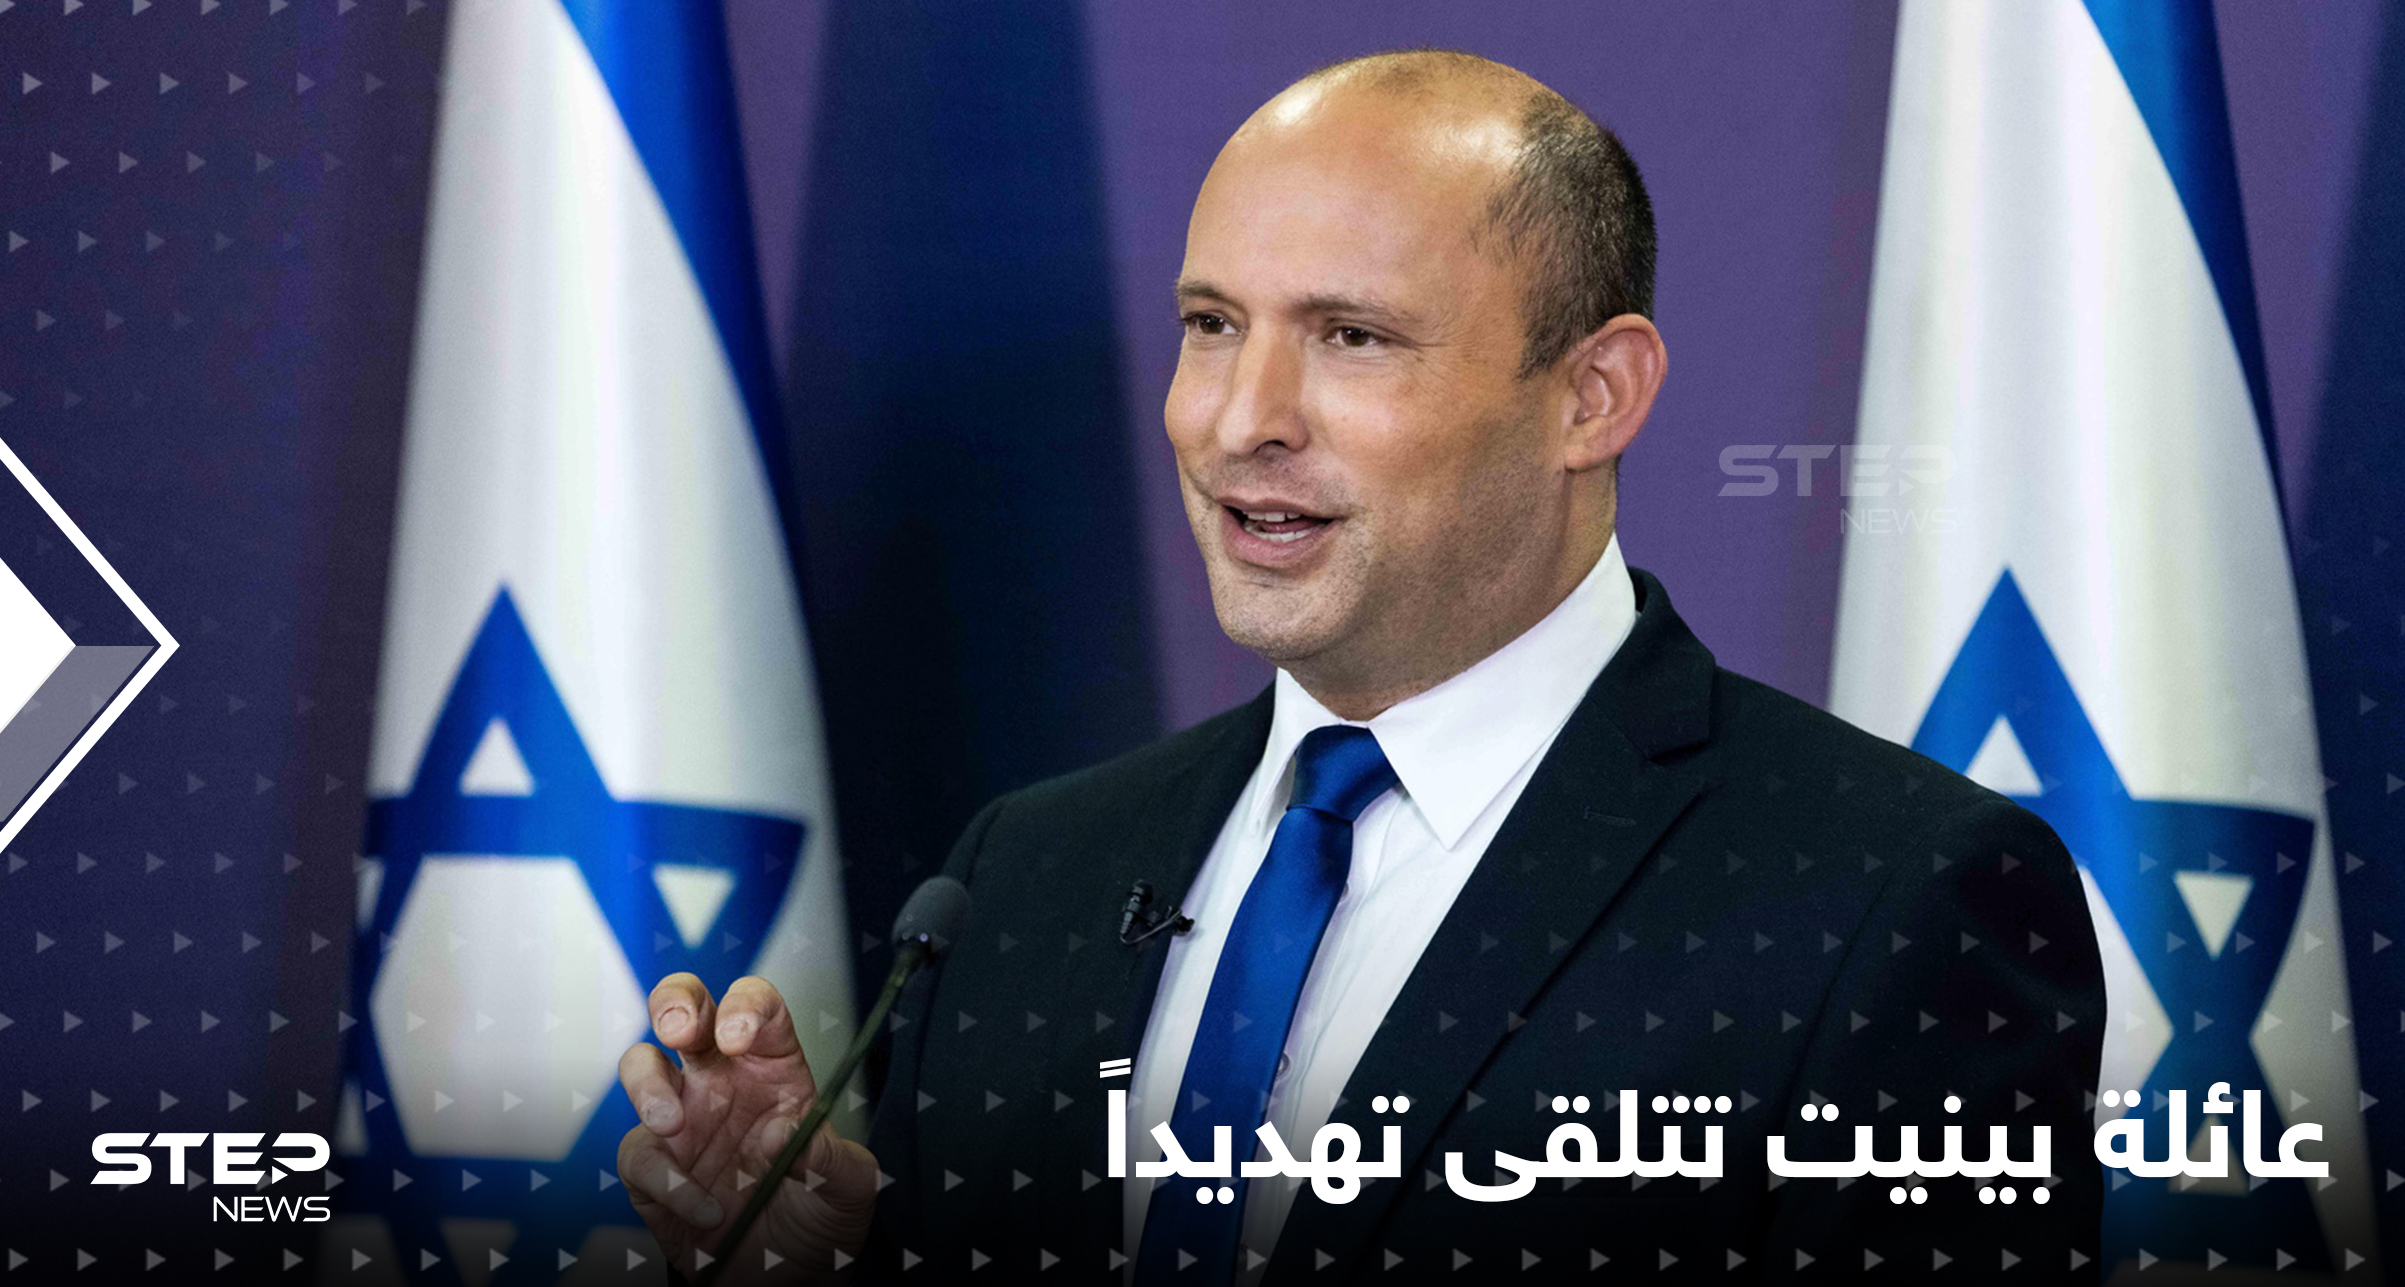 عائلة رئيس الوزراء الإسرائيلي تتلقى ثاني رسالة تهديد بـ"رصاصة" في غضون 48 ساعة